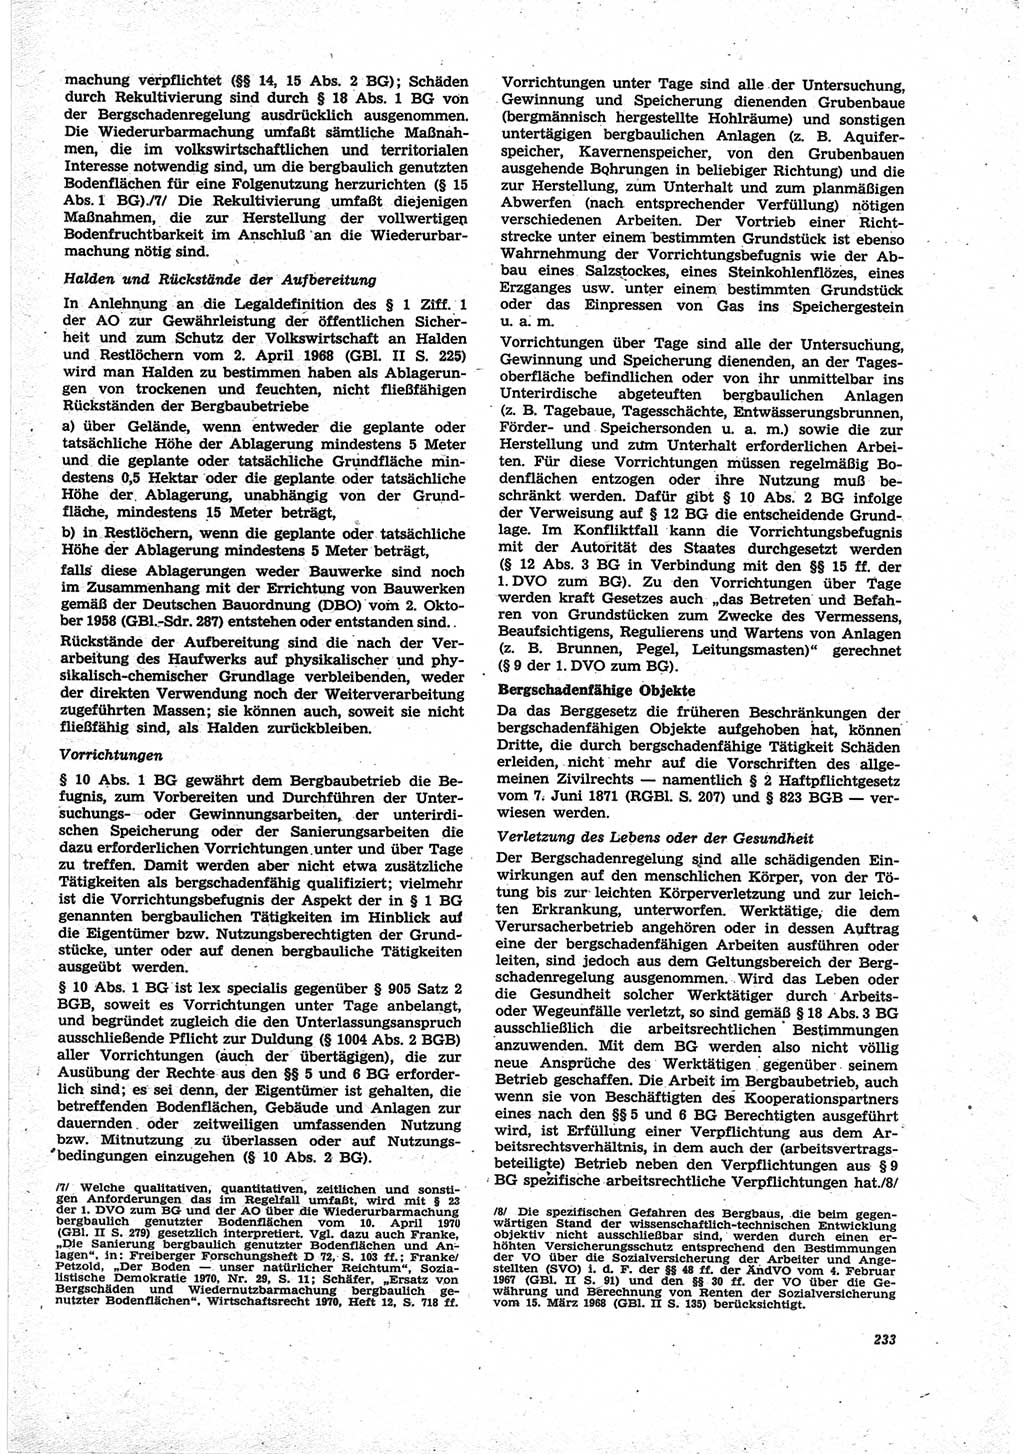 Neue Justiz (NJ), Zeitschrift für Recht und Rechtswissenschaft [Deutsche Demokratische Republik (DDR)], 25. Jahrgang 1971, Seite 233 (NJ DDR 1971, S. 233)